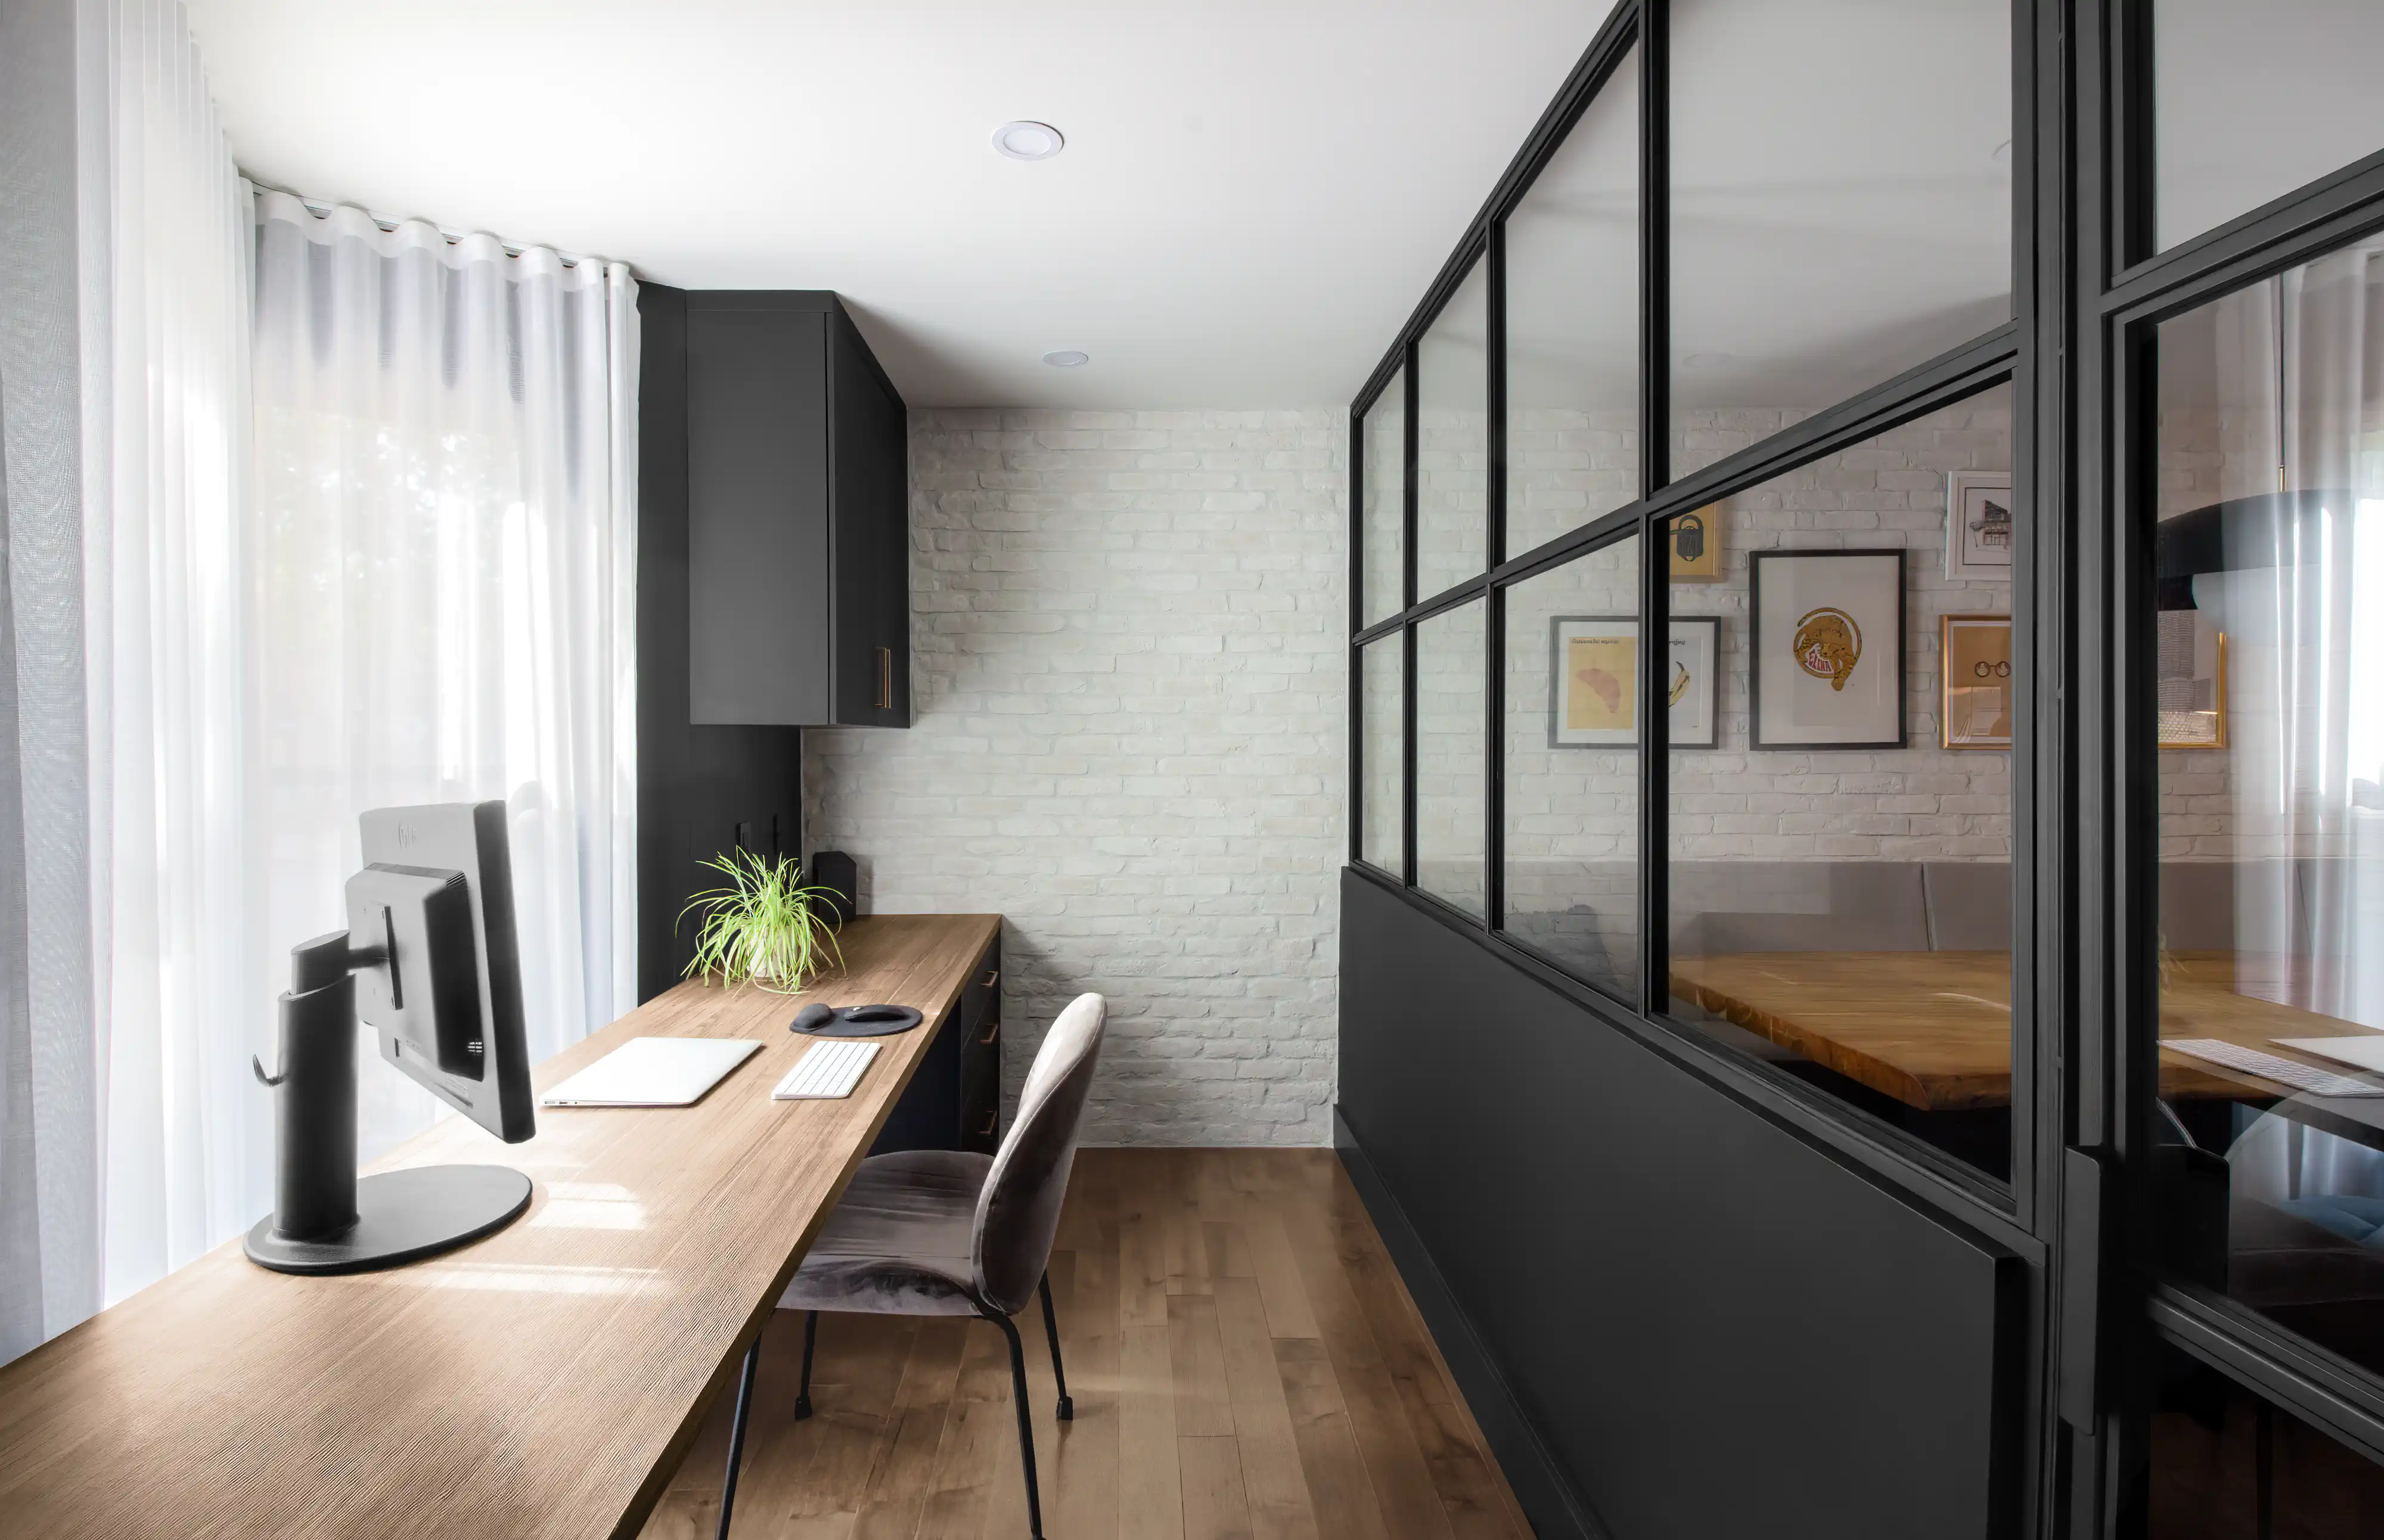 Bureau à domicile épuré avec un long bureau en bois, une chaise moderne et une cloison avec des panneaux de verre, intérieur signé Sarah Brown Design